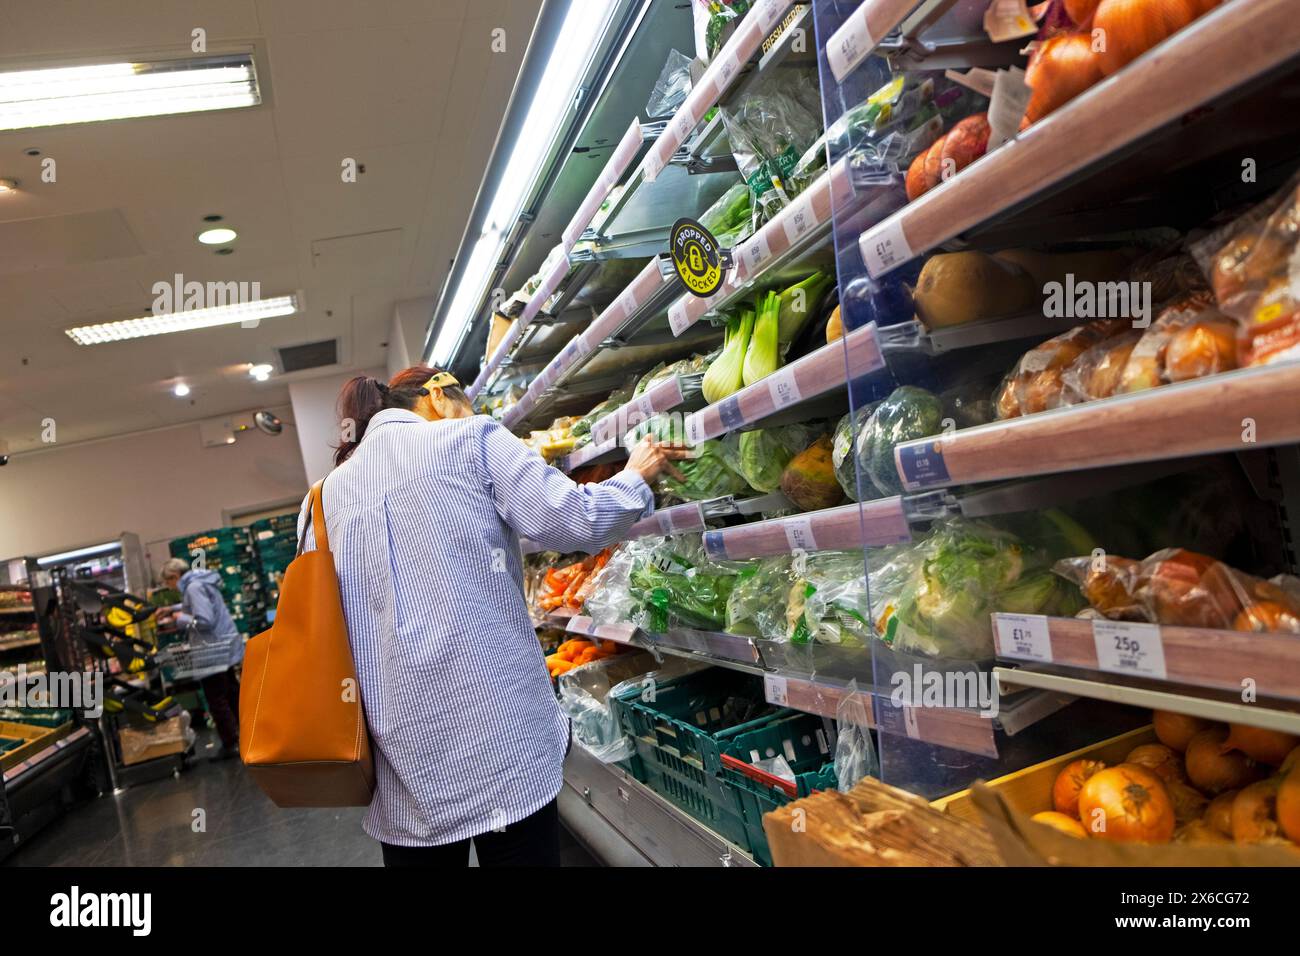 Rückansicht Person Frau, die Lebensmittel Gemüse kauft, Blick auf Blattgemüse in vegetarischen Regalen in der Lebensmittelhalle des M&S Supermarktes UK KATHY DEWITT Stockfoto